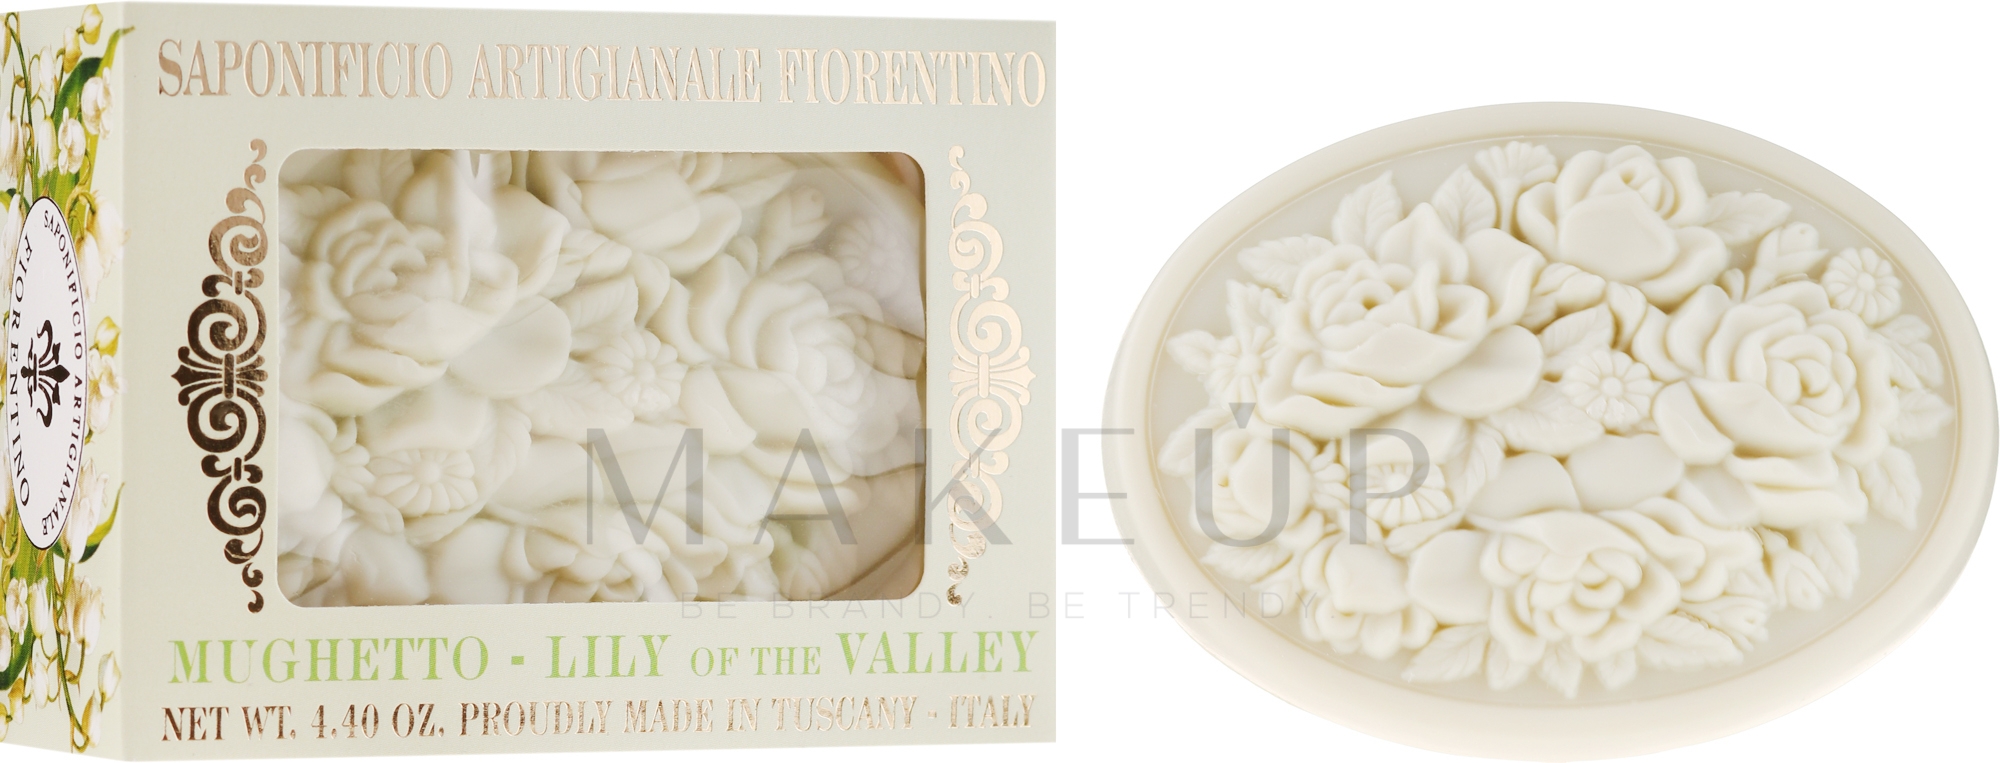 Naturseife mit Maiglöckchen-Duft - Saponificio Artigianale Fiorentino Botticelli Lily Of The Valley Soap — Bild 125 g